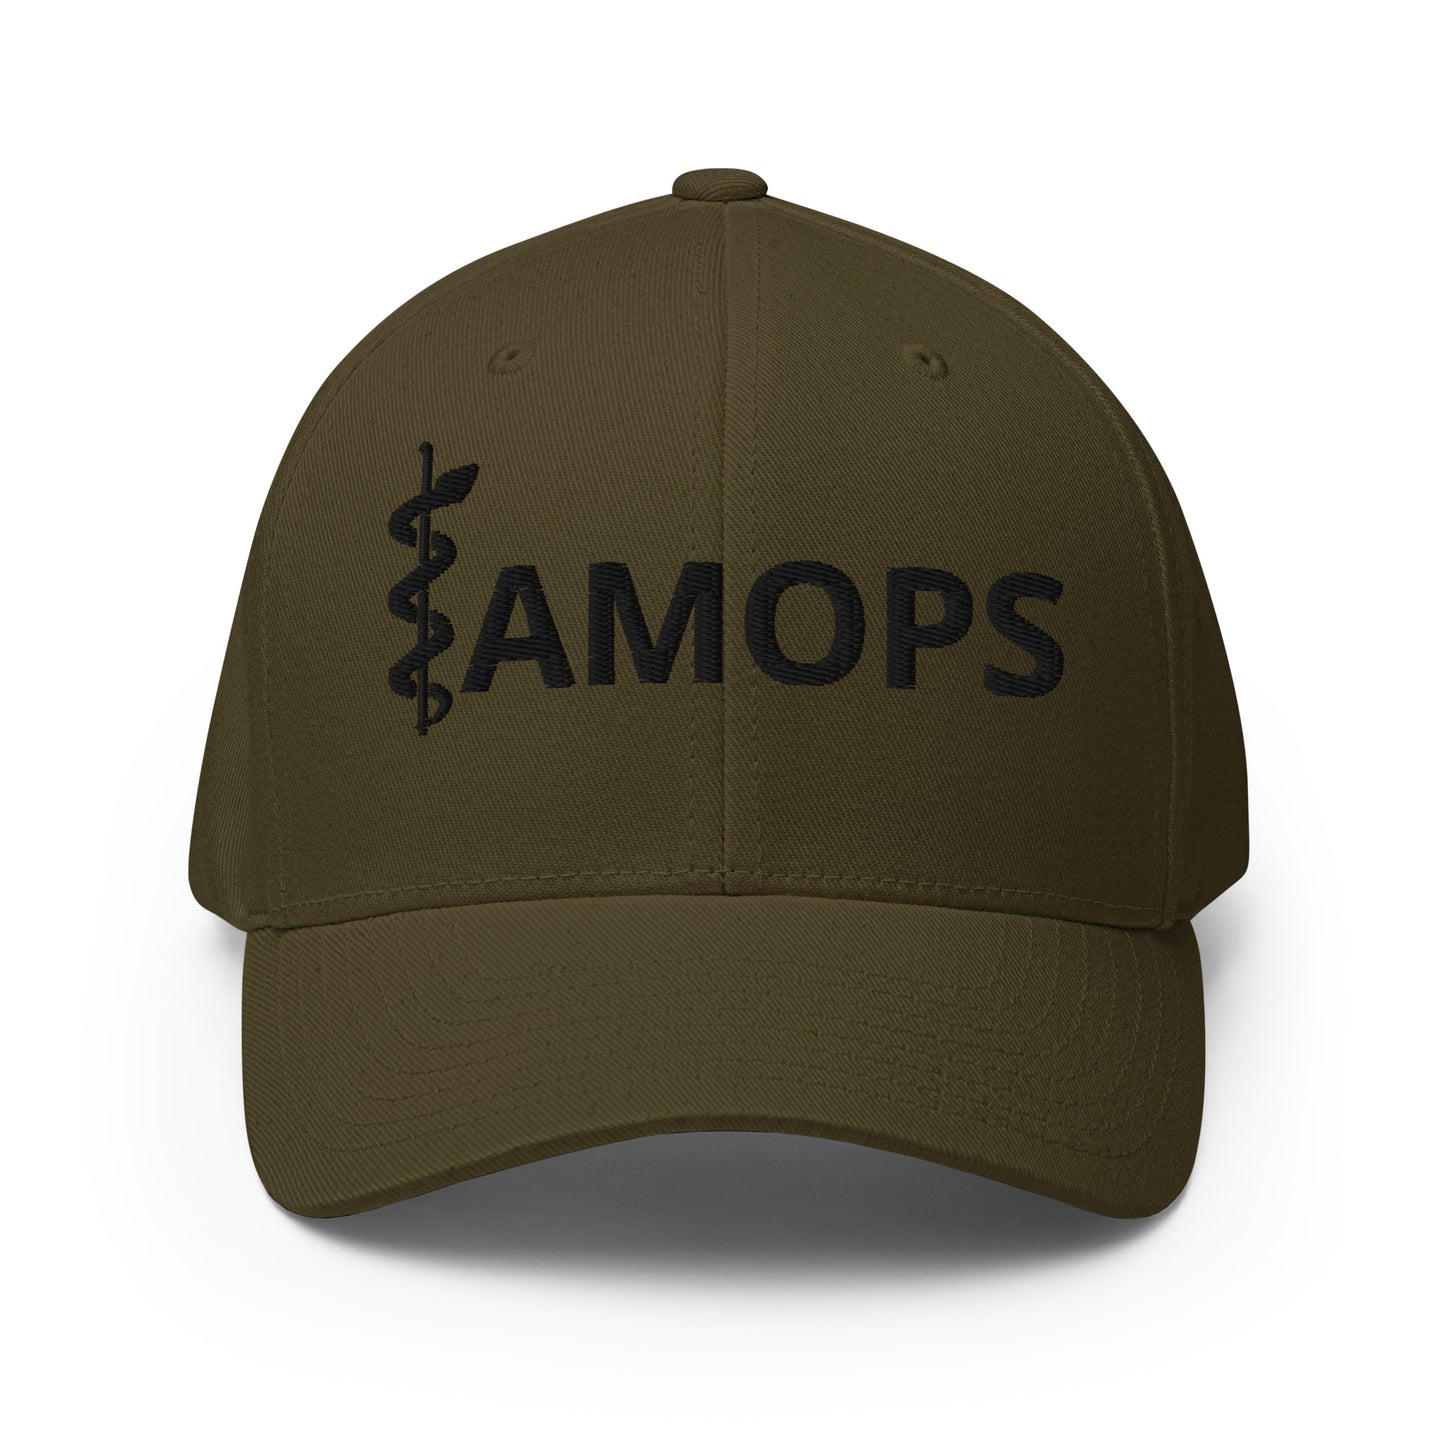 AMOPS FlexFit cap